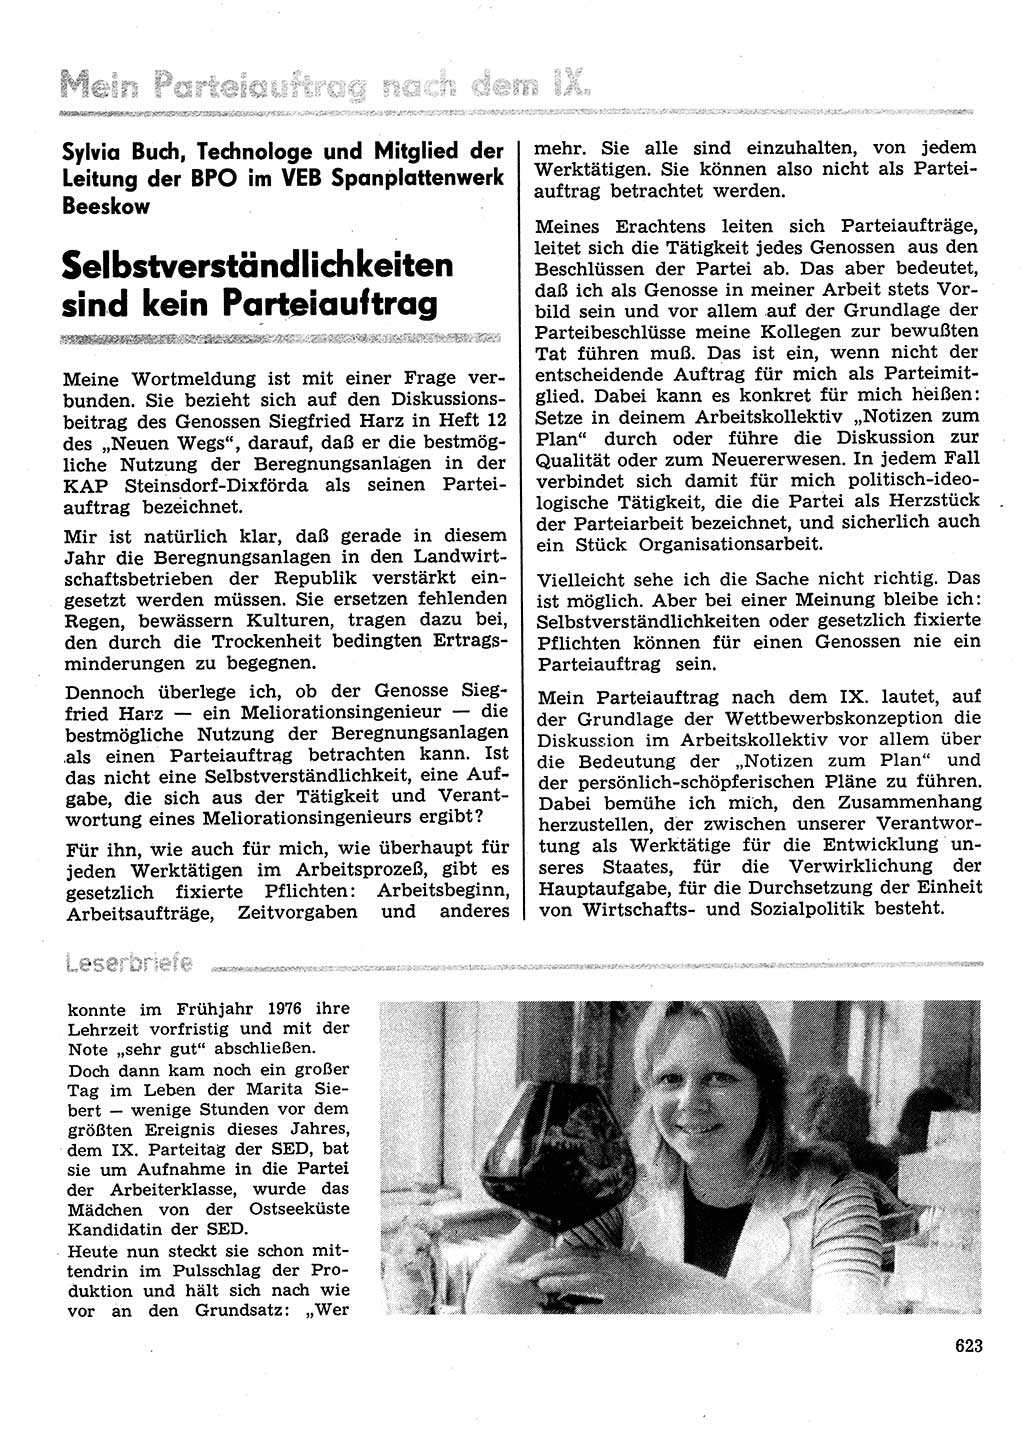 Neuer Weg (NW), Organ des Zentralkomitees (ZK) der SED (Sozialistische Einheitspartei Deutschlands) für Fragen des Parteilebens, 31. Jahrgang [Deutsche Demokratische Republik (DDR)] 1976, Seite 623 (NW ZK SED DDR 1976, S. 623)